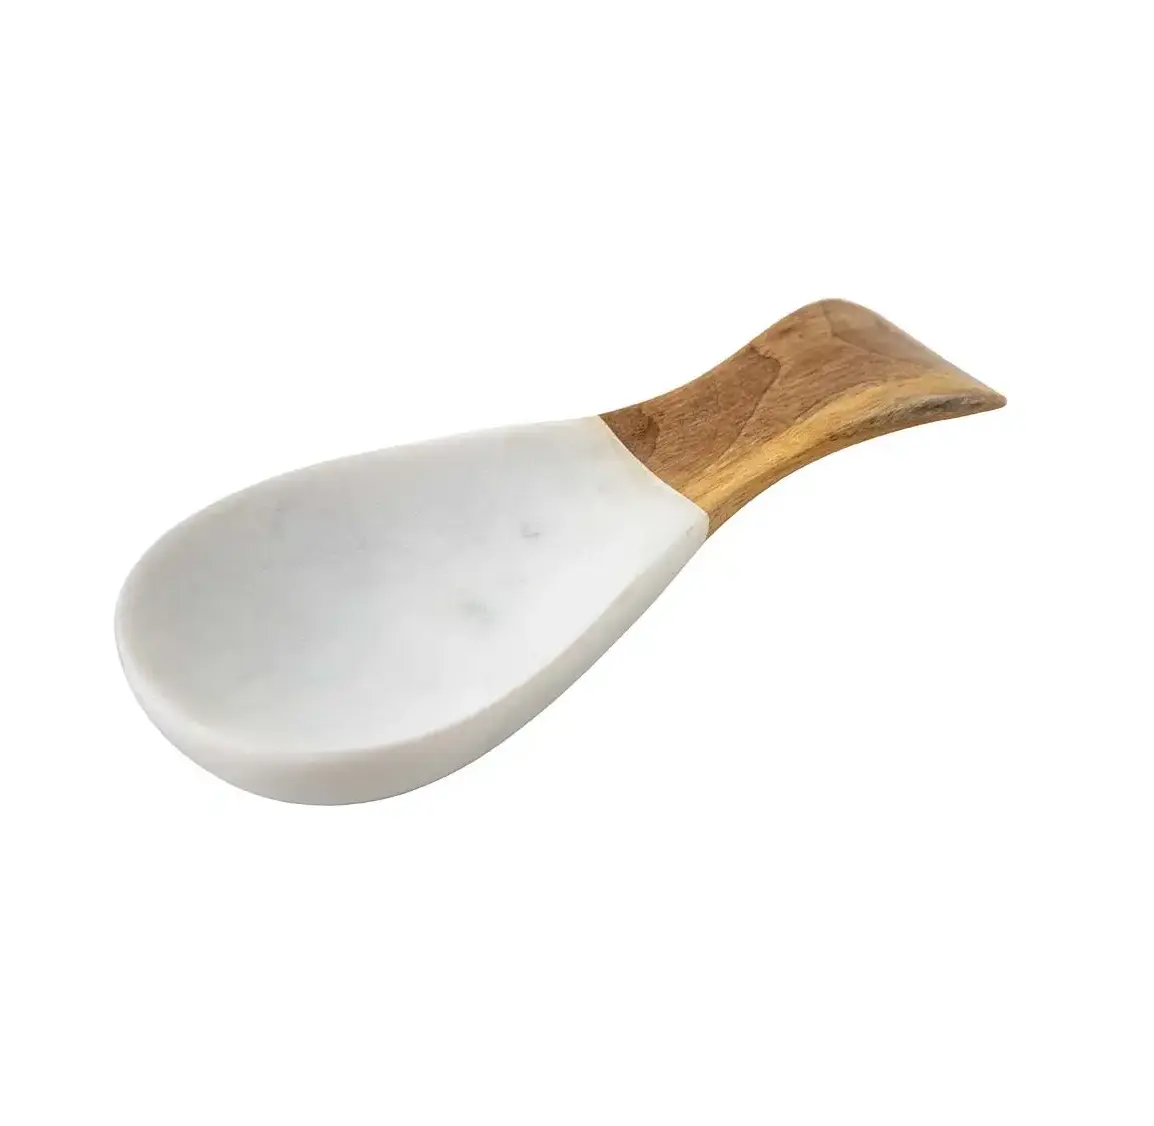 Poggia cucchiaio di marmo e legno colore bianco cucchiaio supporto per forchetta da cucina organizzatore di vendita calda